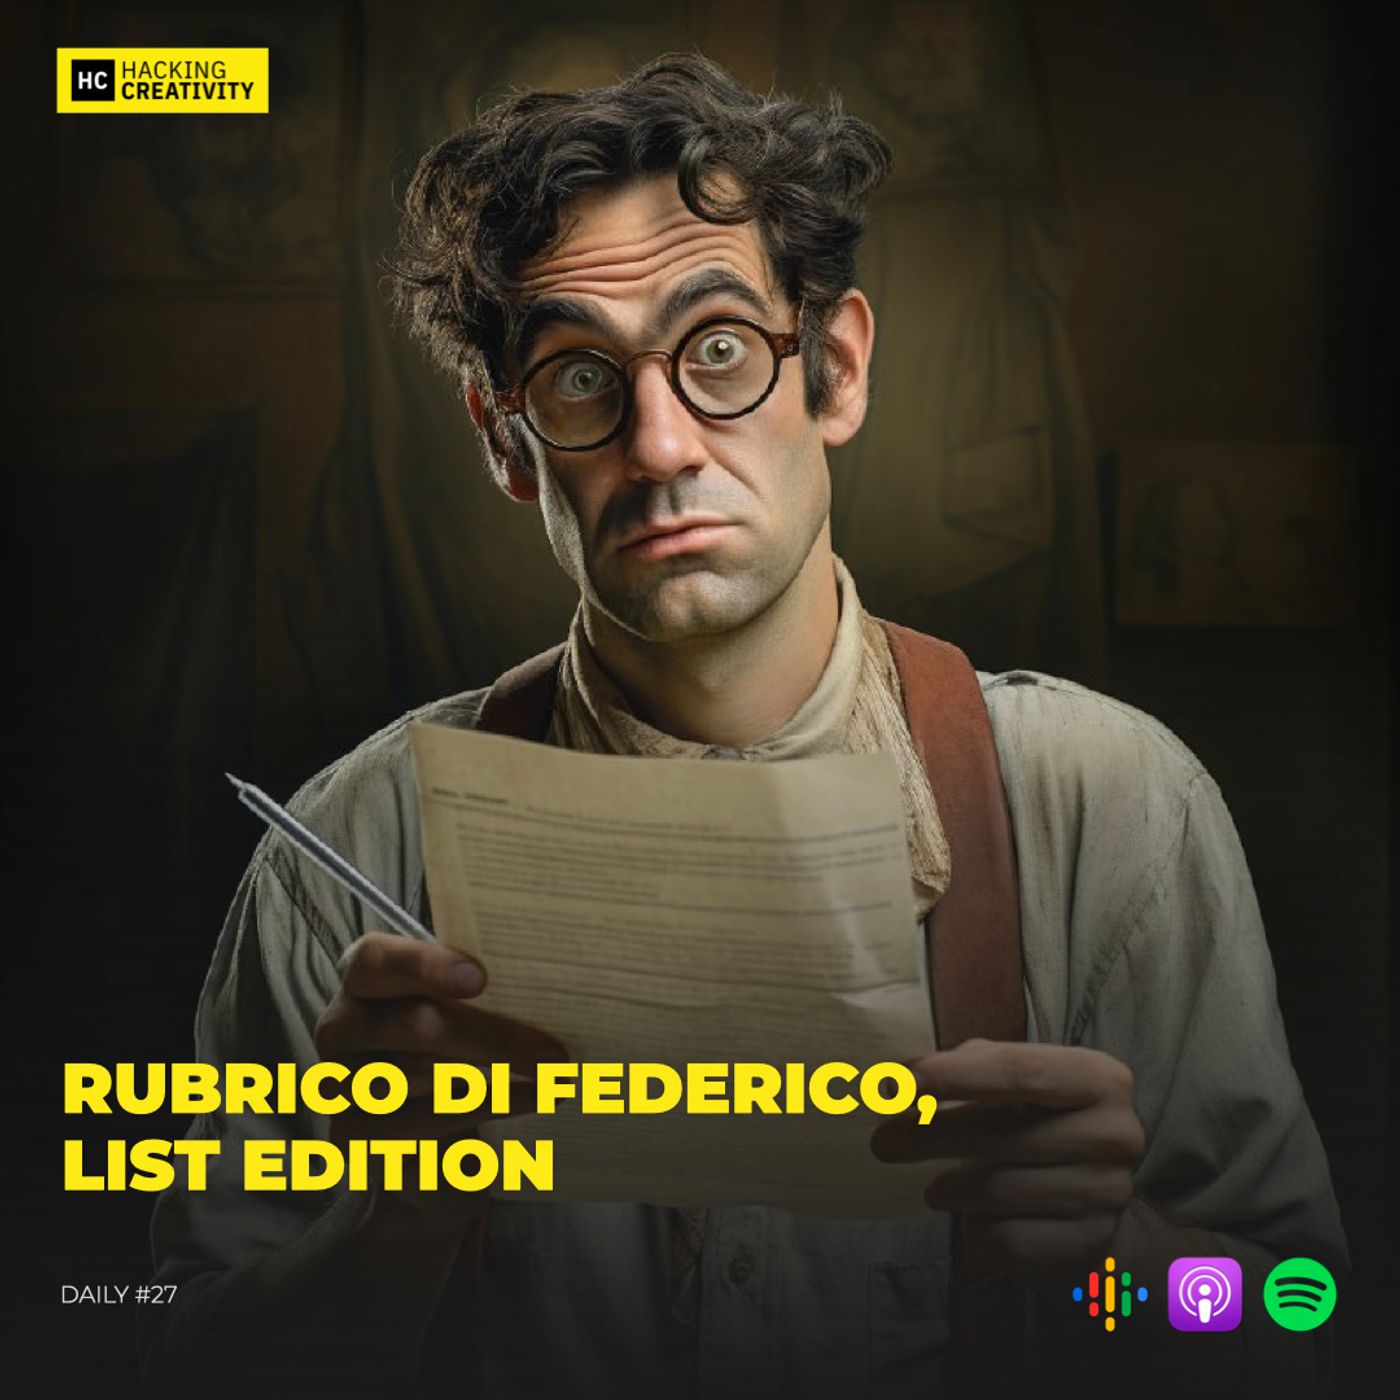 197 - Rubrico di Federico, list edition (DAILY)